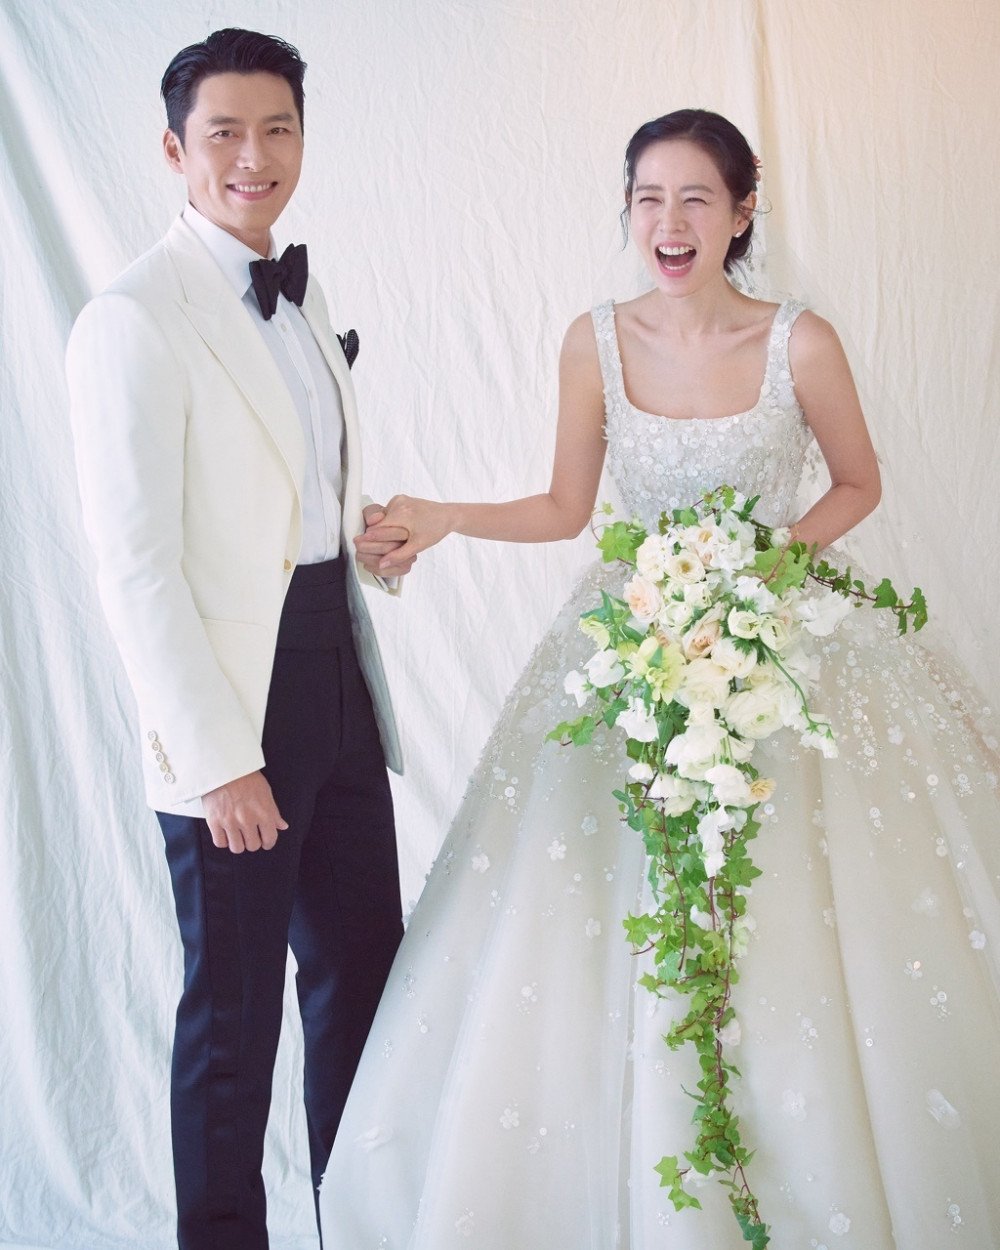 Hyun Bin - Son Ye Jin, đôi trai tài gái sắc được yêu thích nhất hiện nay! Bộ ảnh cưới của họ đang làm mưa làm gió trên mạng xã hội. Nếu bạn là fan của hai diễn viên này, hãy đến ngay với chúng tôi để được chiêm ngưỡng bộ ảnh cưới ấn tượng của họ.